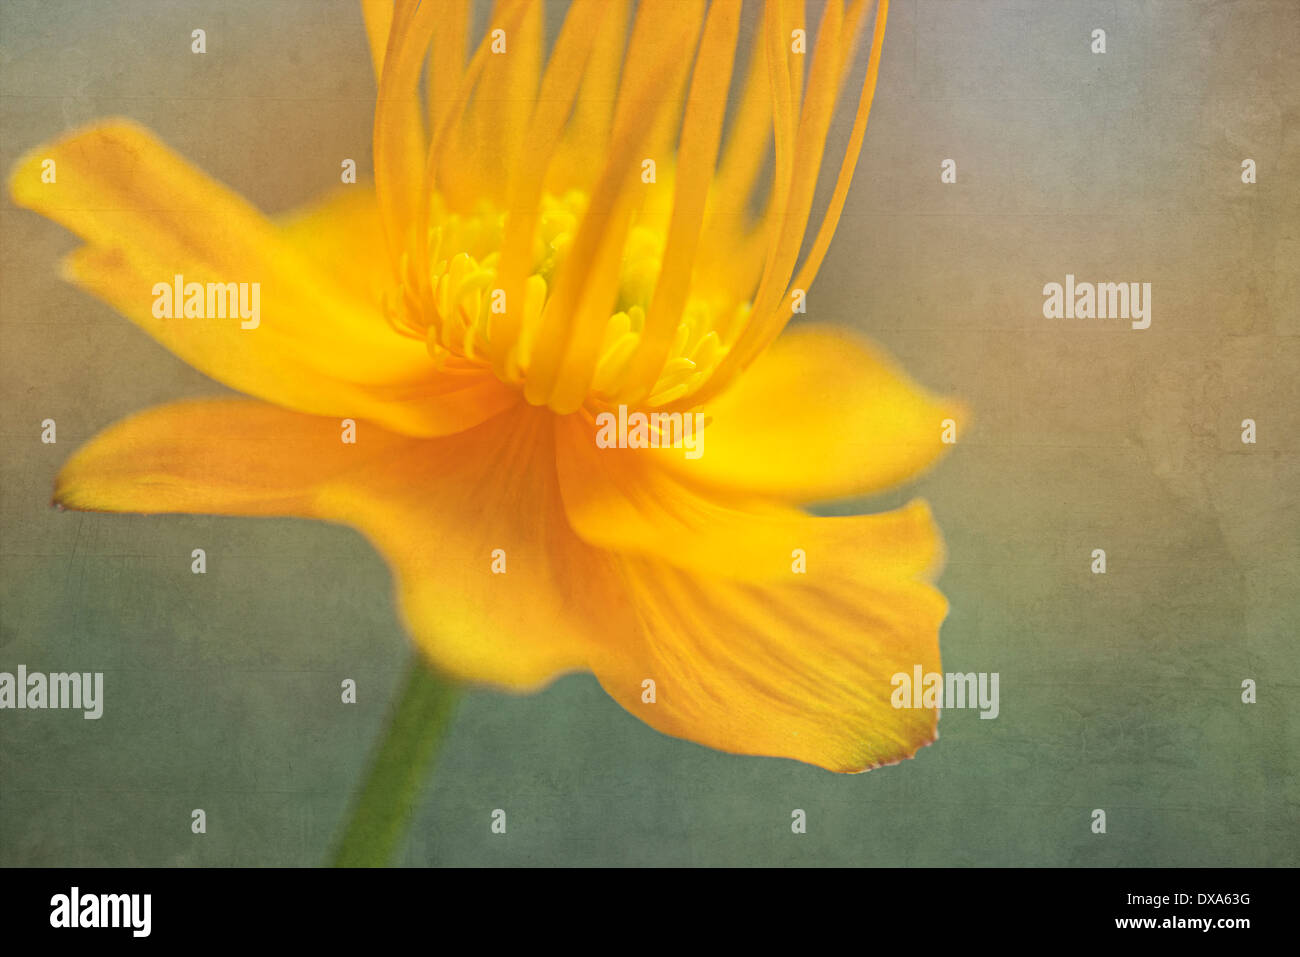 Globeflower, Trollius chinensis, yellow flower showing stamens and stigma. Stock Photo